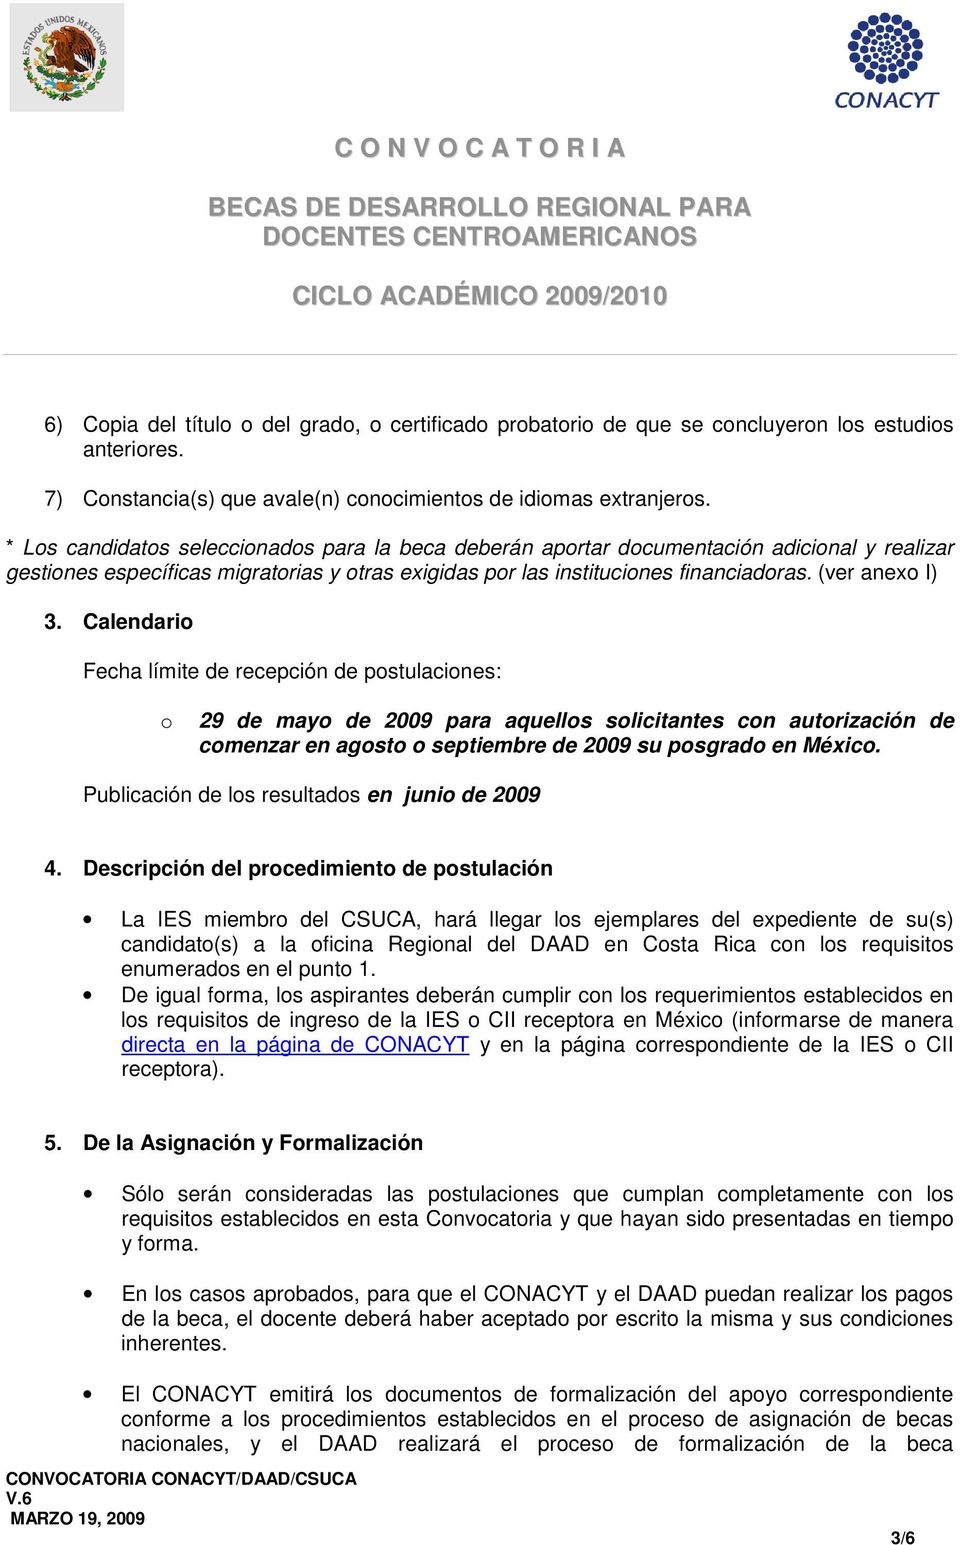 Calendari Fecha límite de recepción de pstulacines: 29 de may de 2009 para aquells slicitantes cn autrización de cmenzar en agst septiembre de 2009 su psgrad en Méxic.